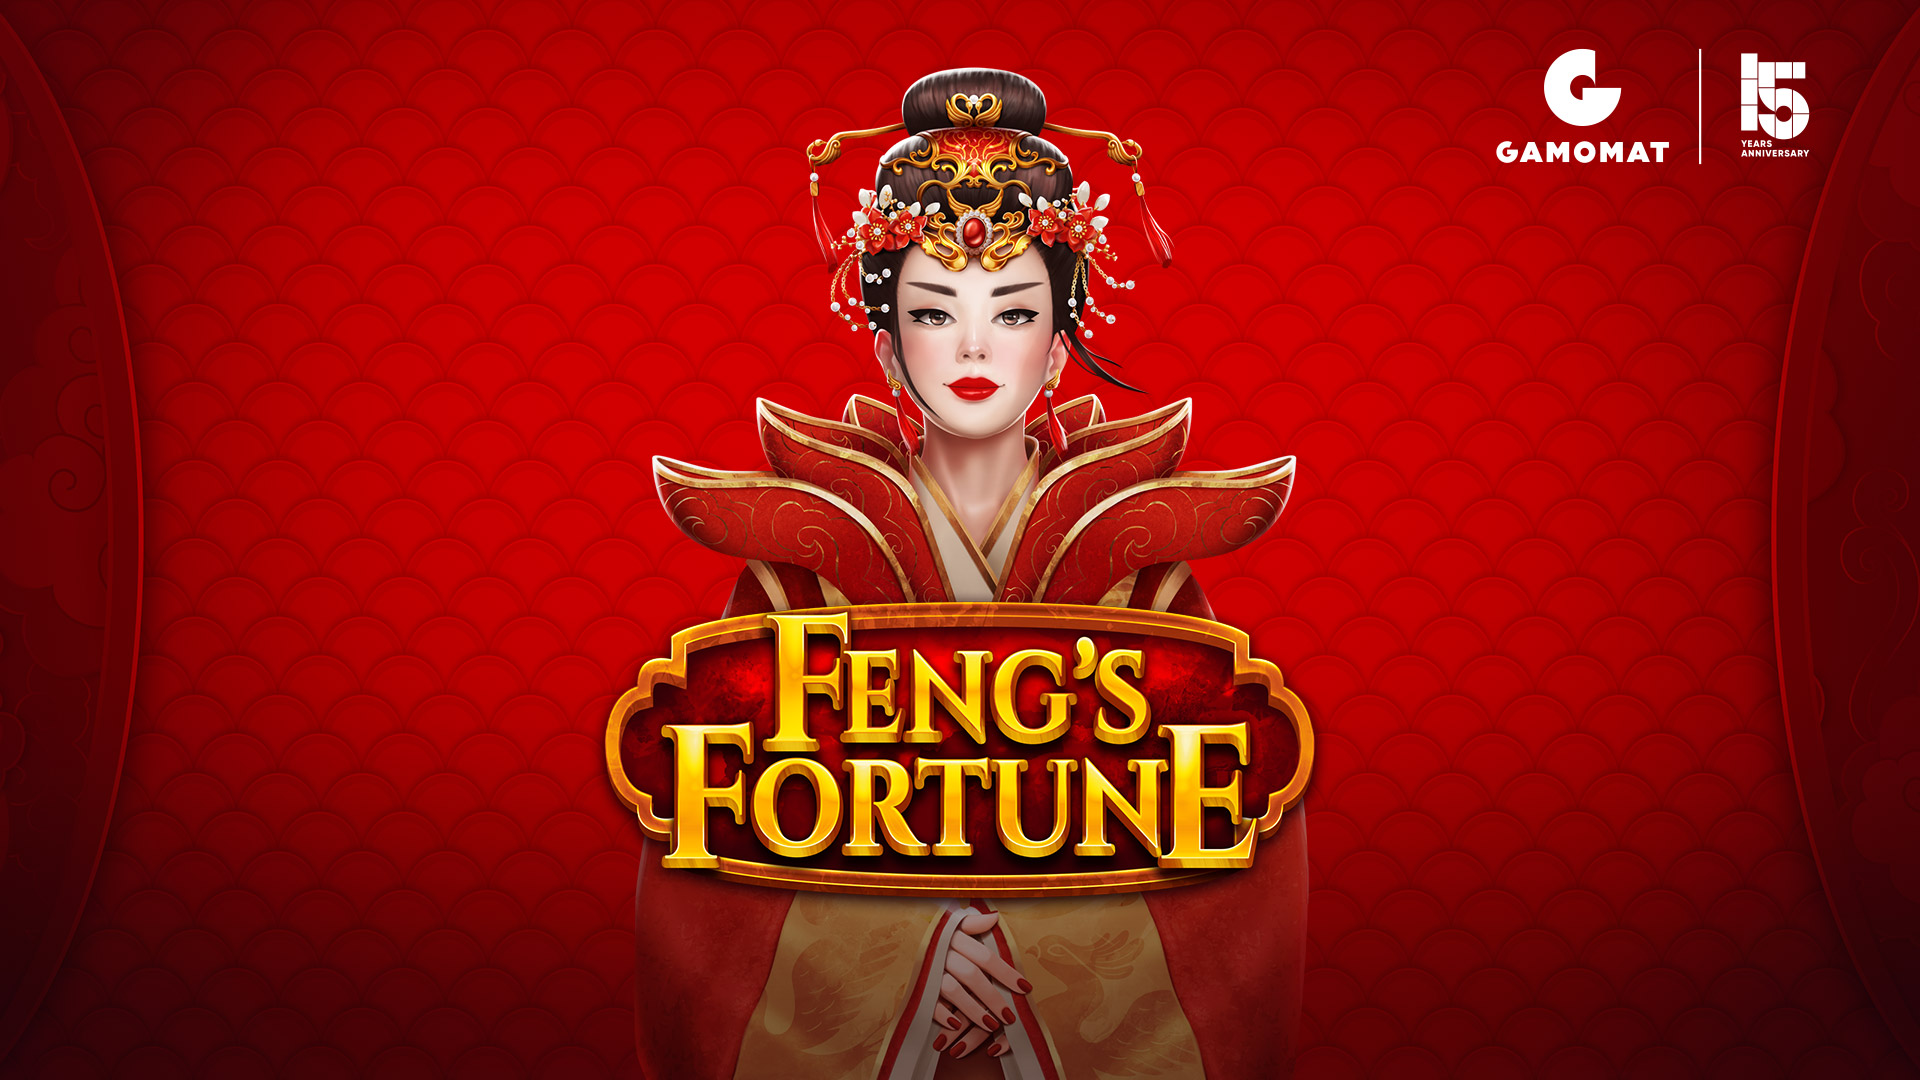 Fengâs Fortune soars into the market